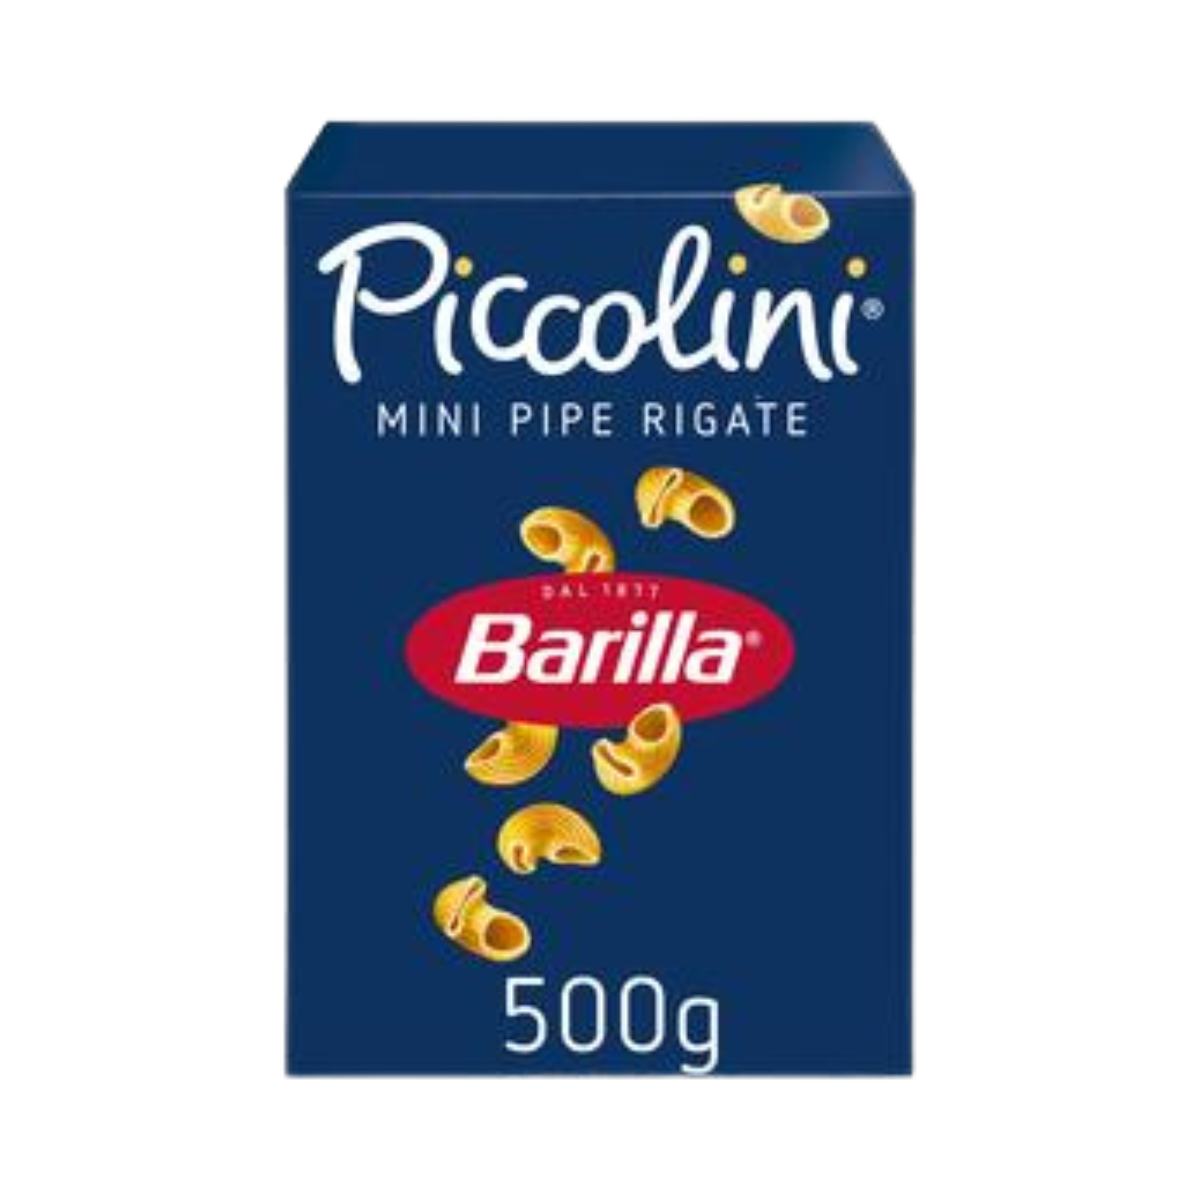 Pâtes Barilla Piccolini Mini Pipe Rigate 500g